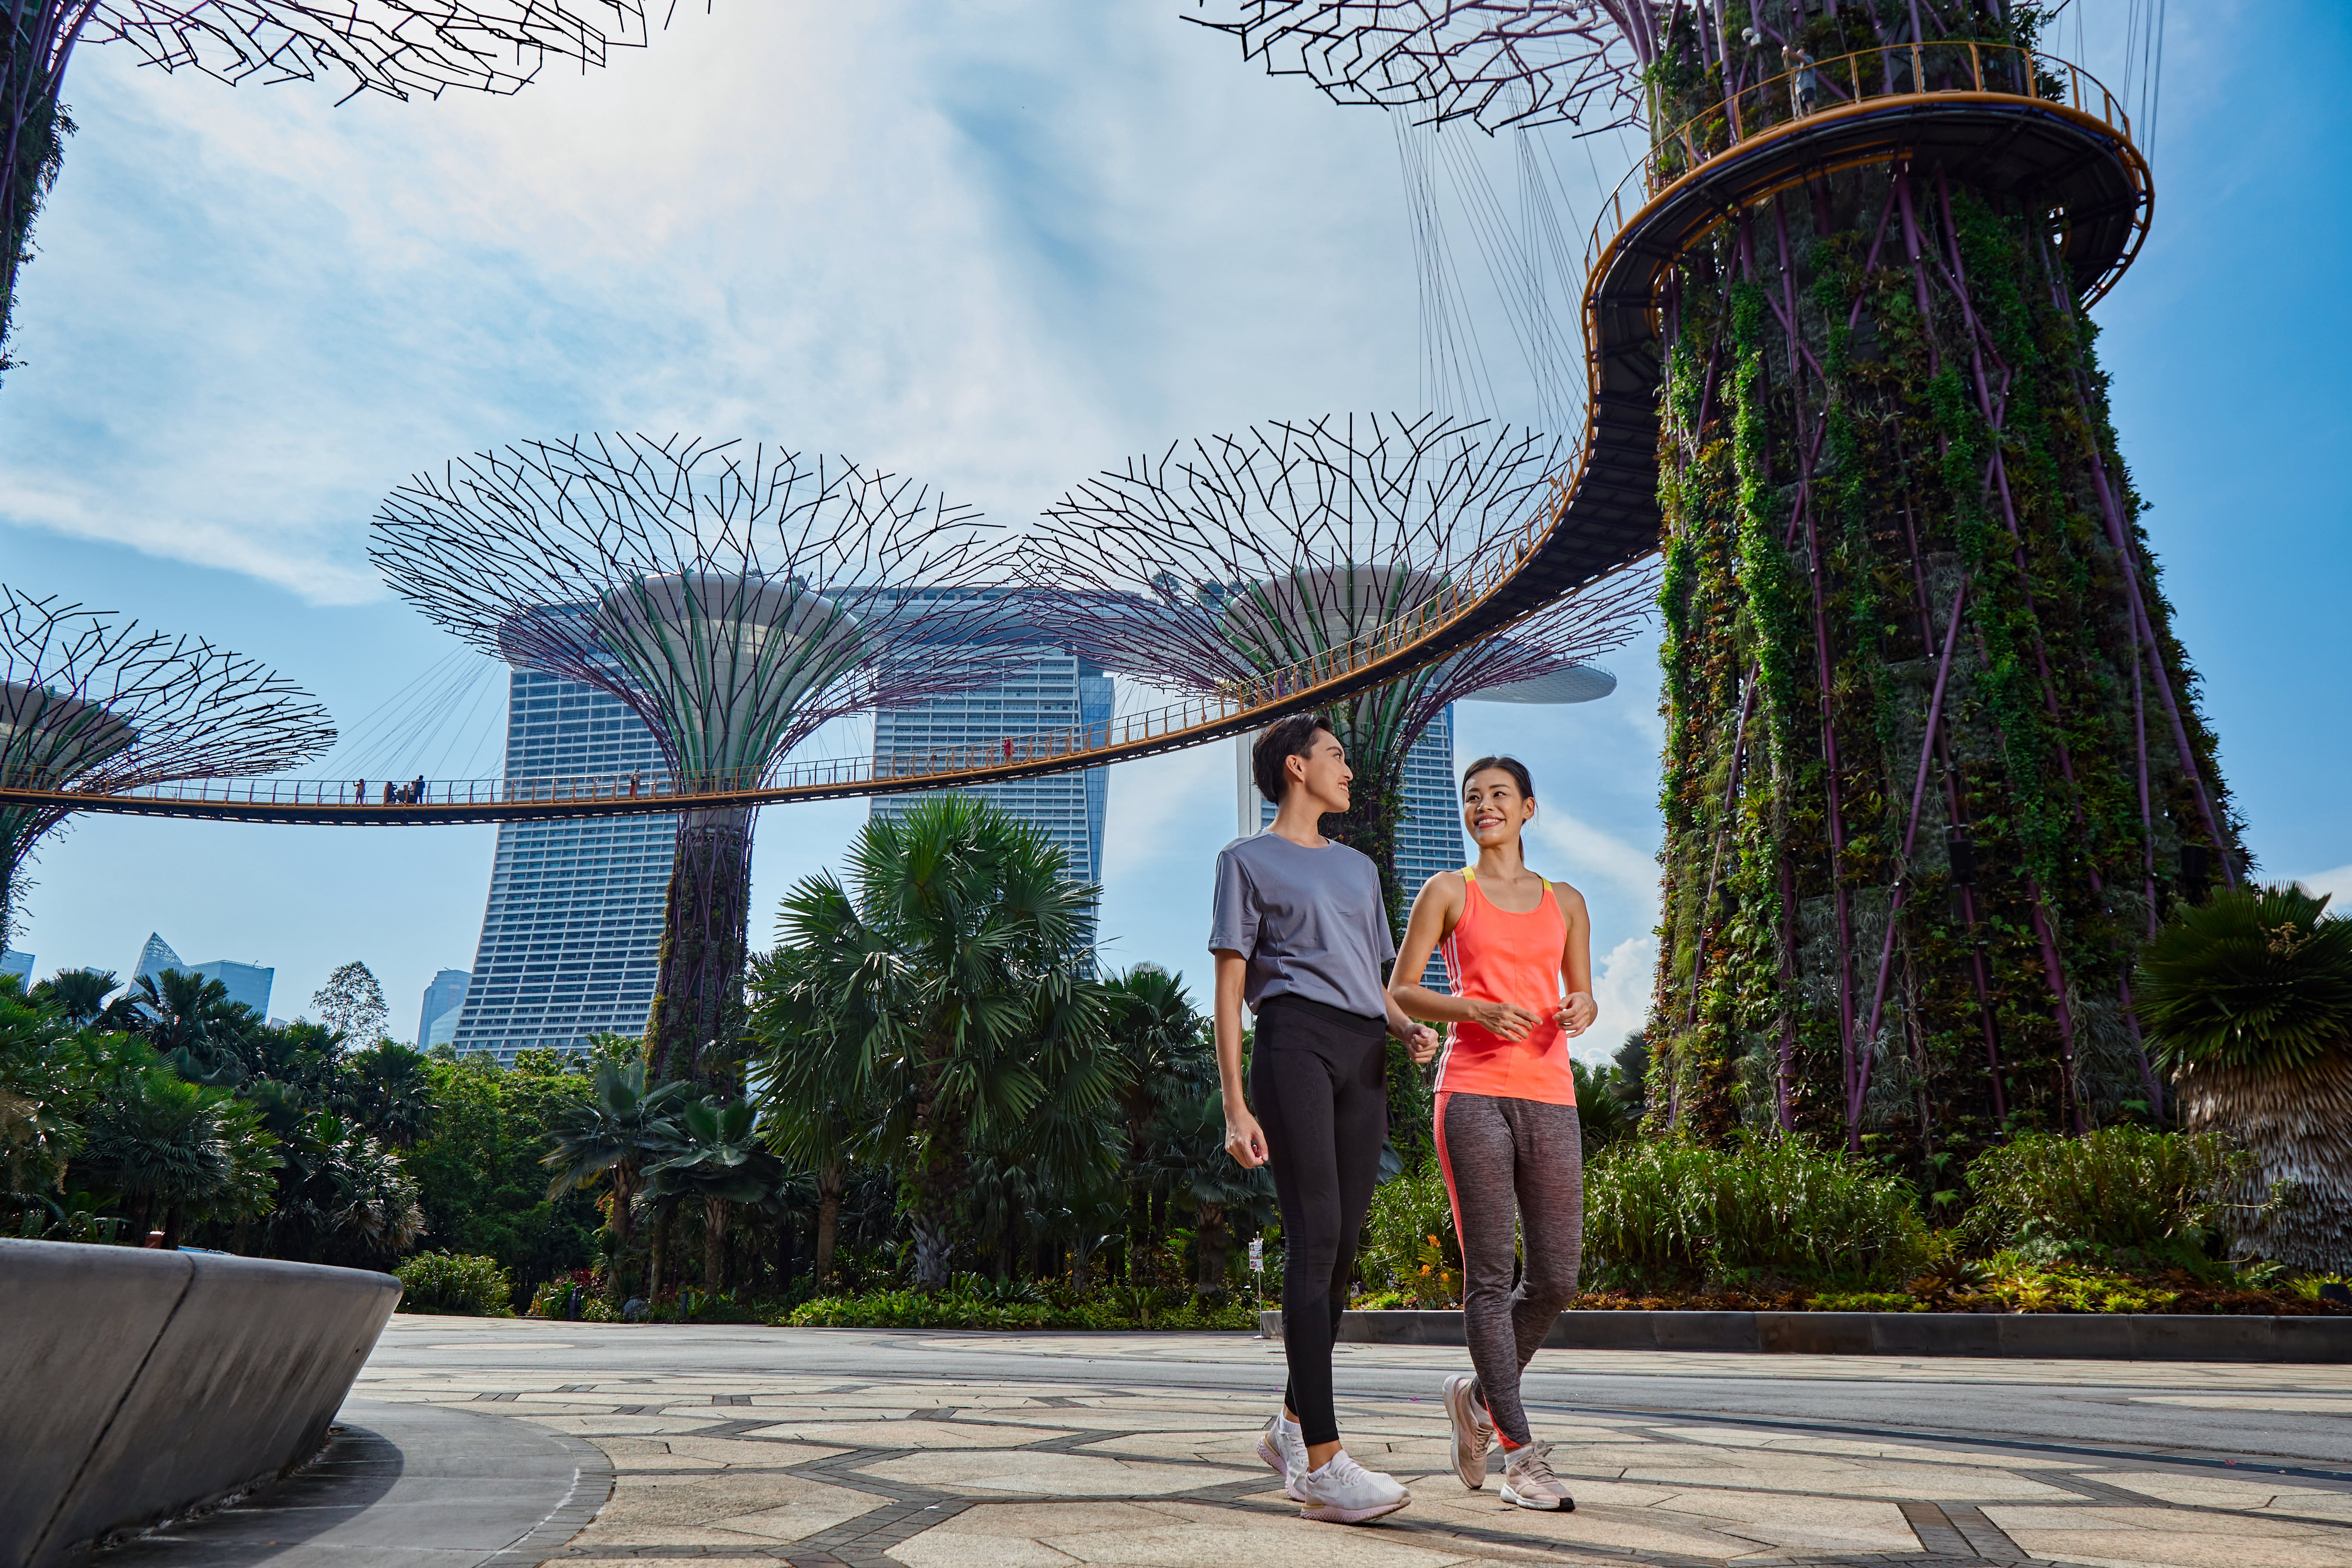 A Guide to Enjoying the Singapore City's Outdoor Splendor